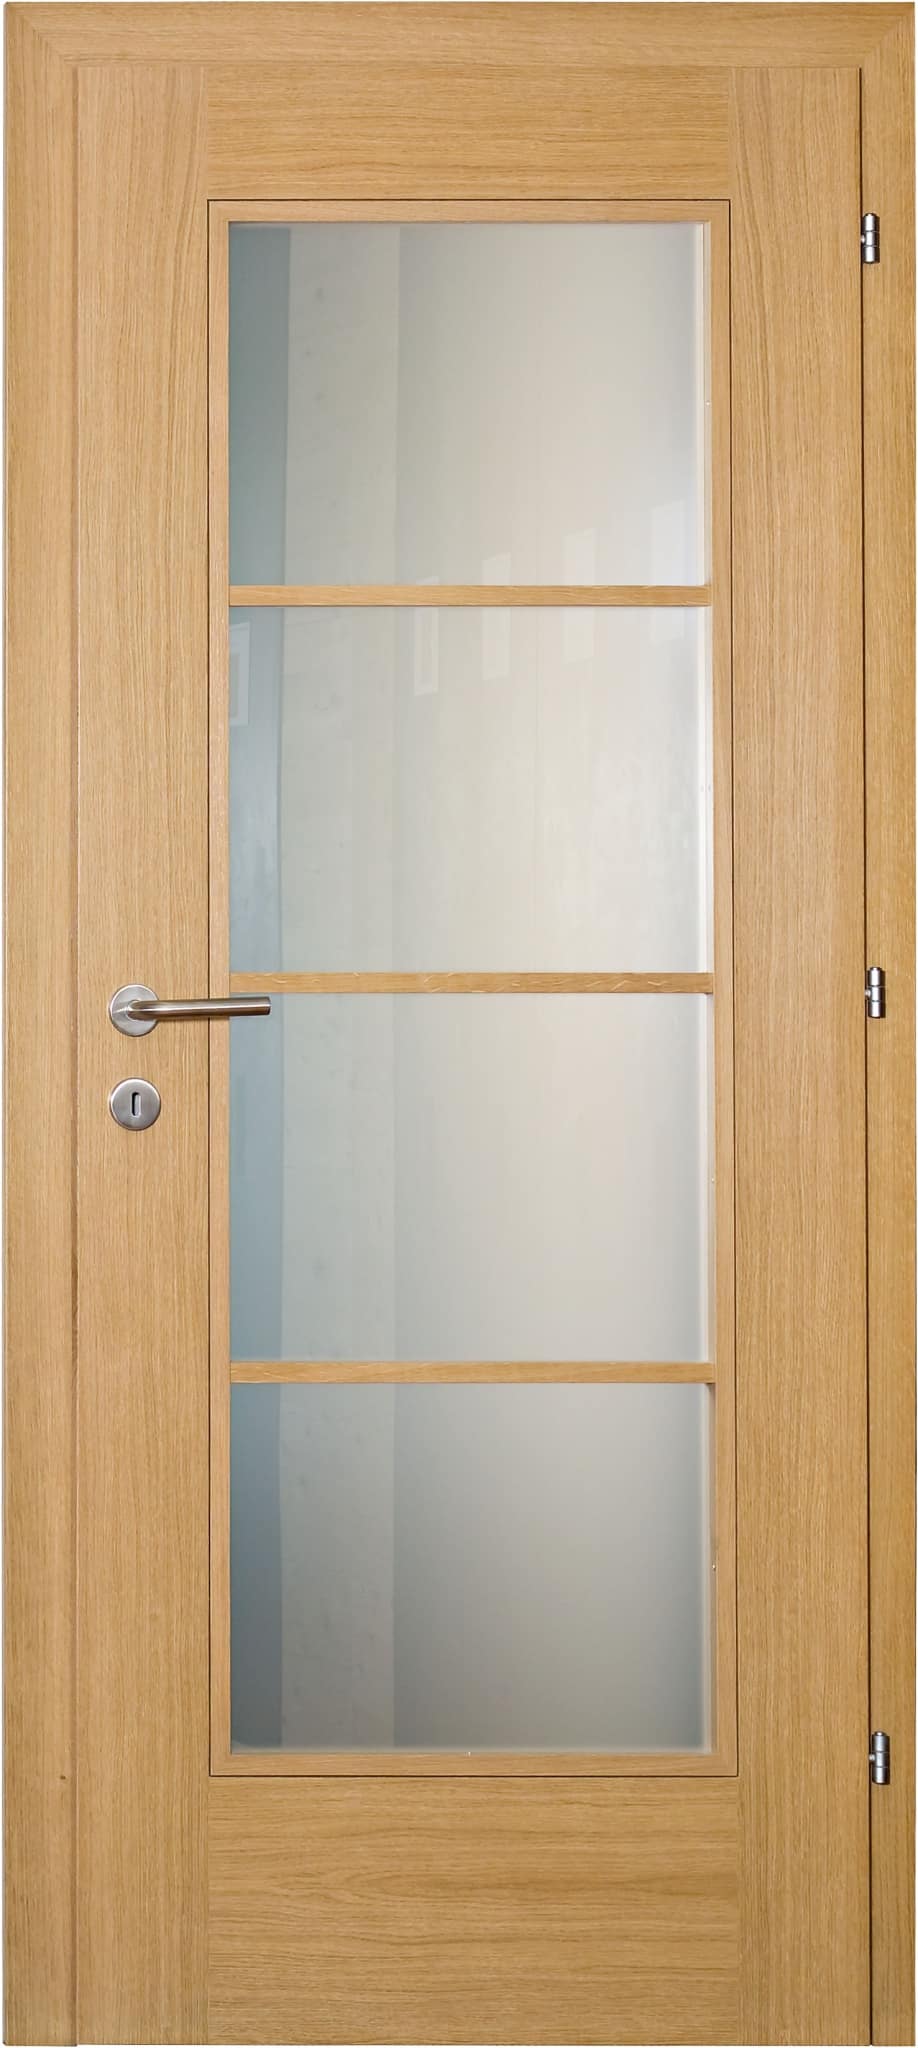 Rubner Türen: Haustüren, Innentüren und Funktionstüren aus Echtholz